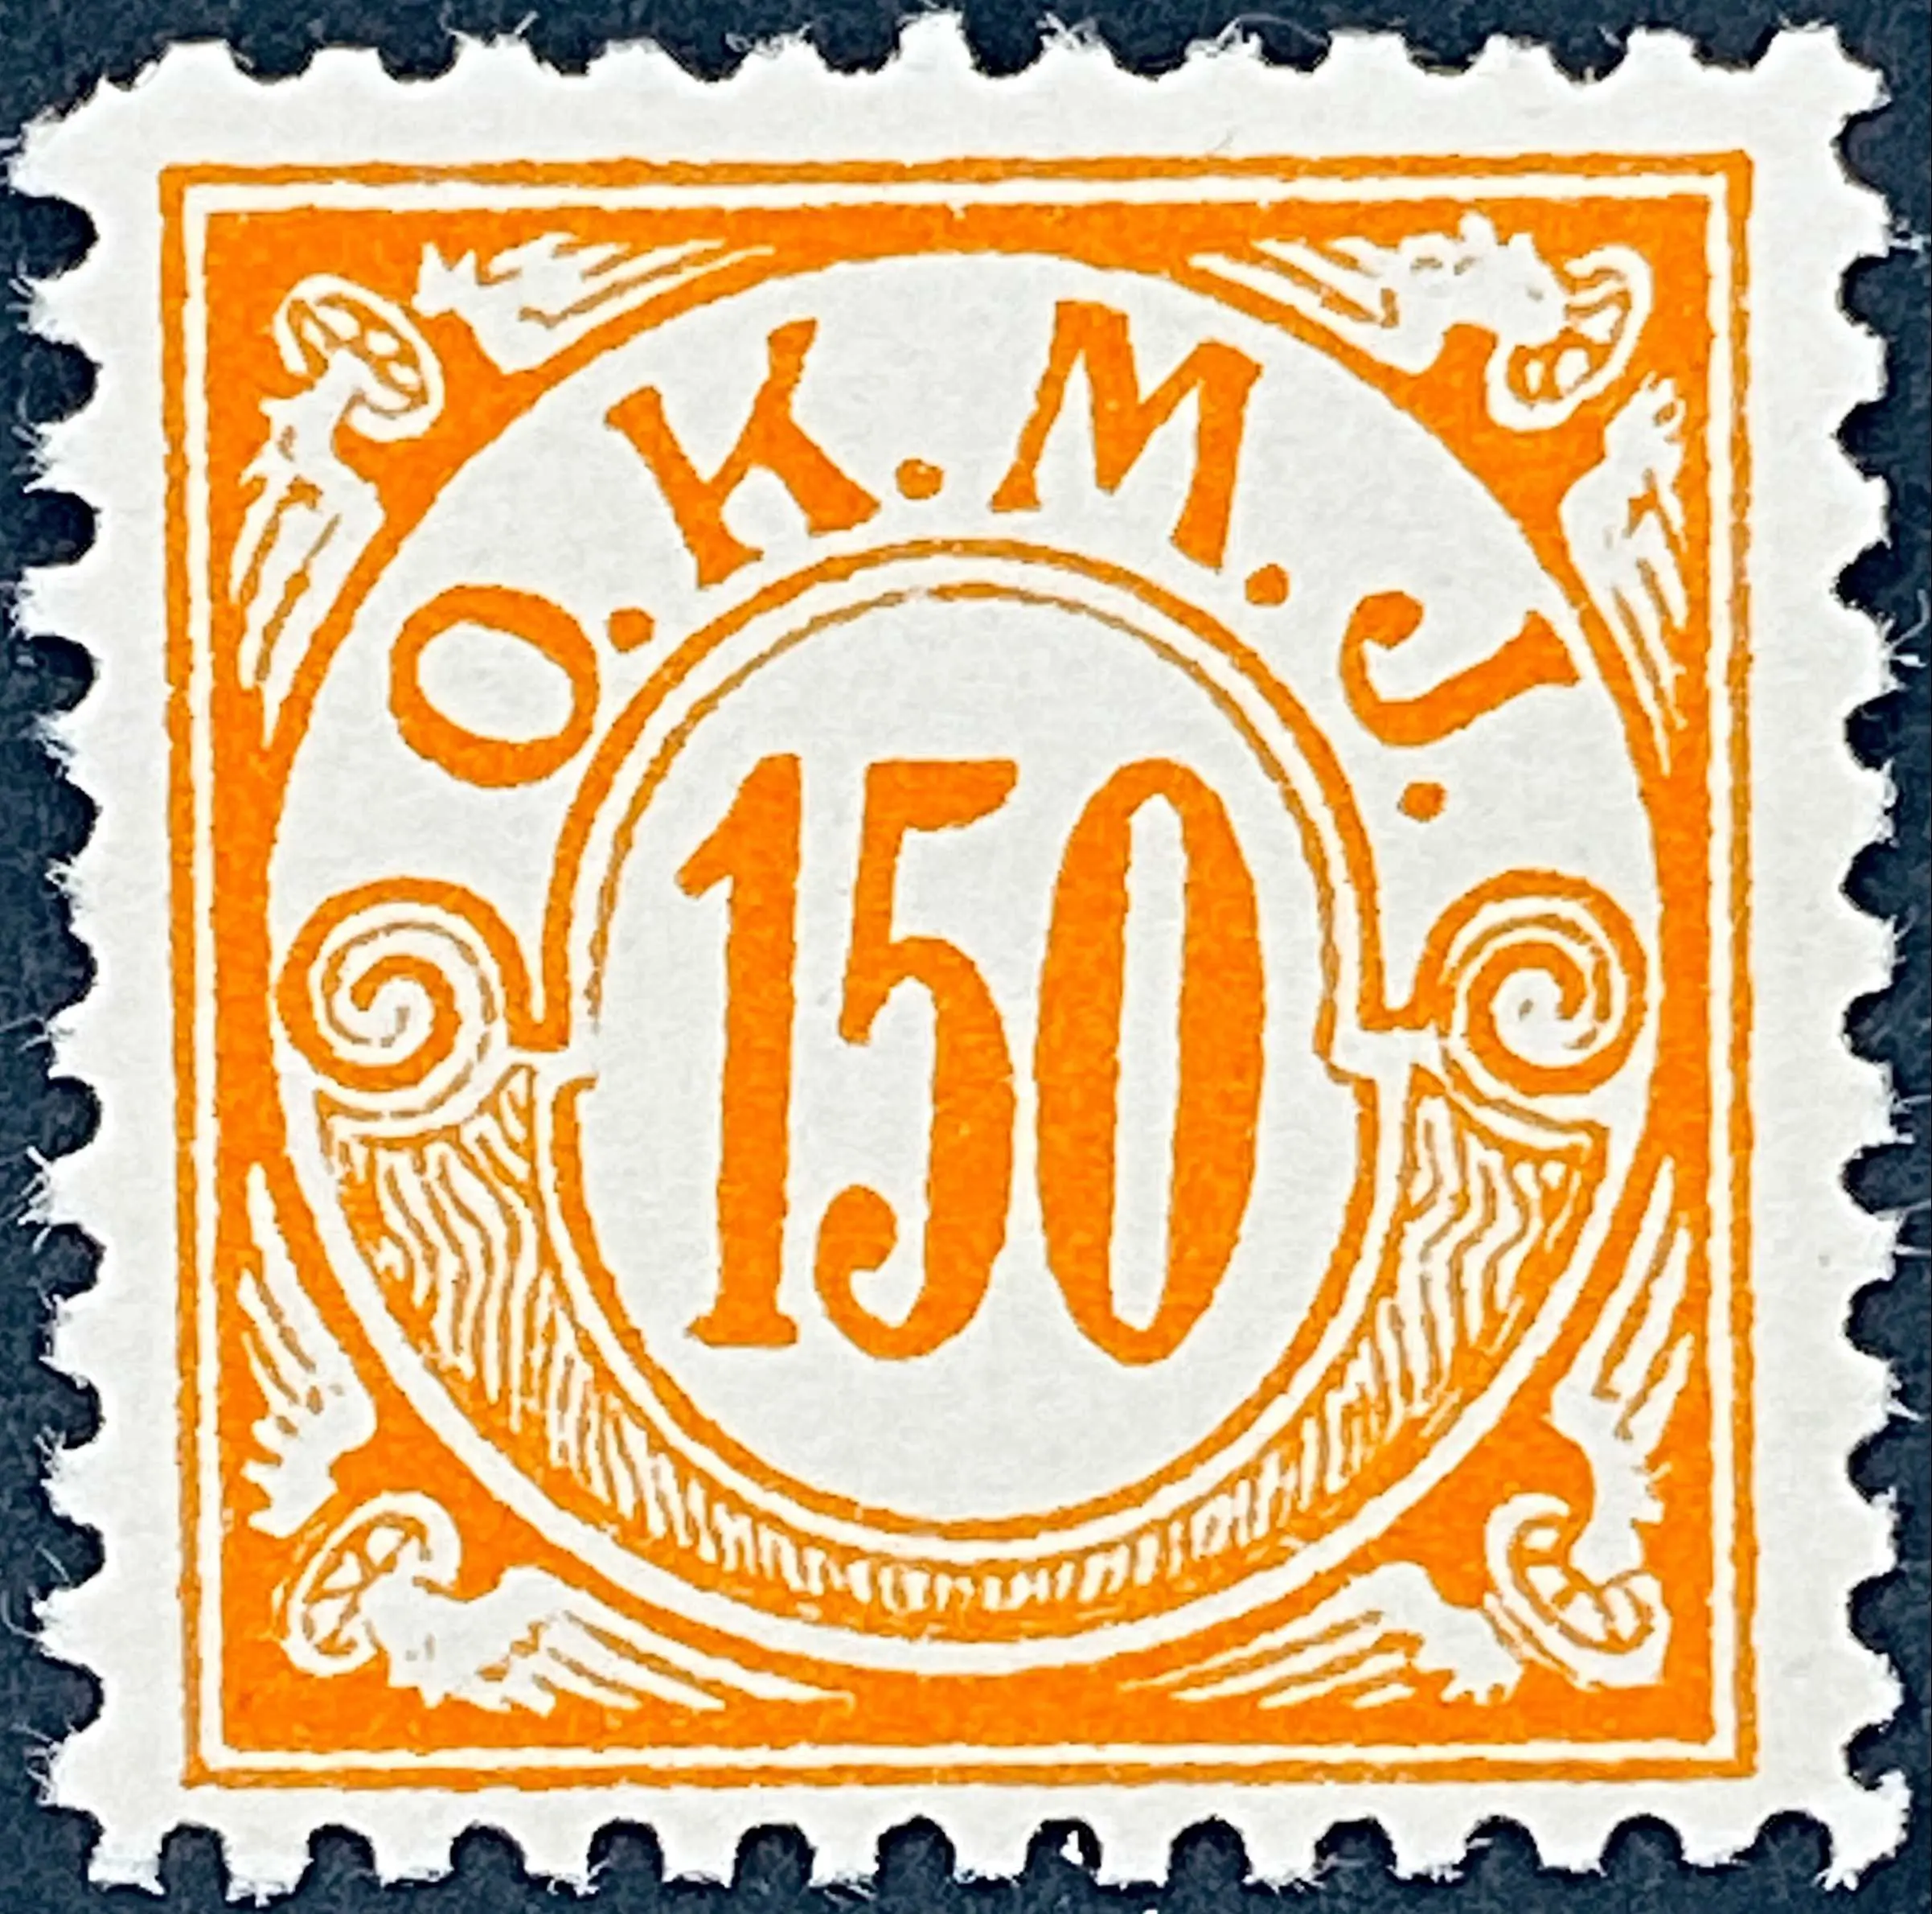 OKMJ F21 - 150 Øre - Orange.